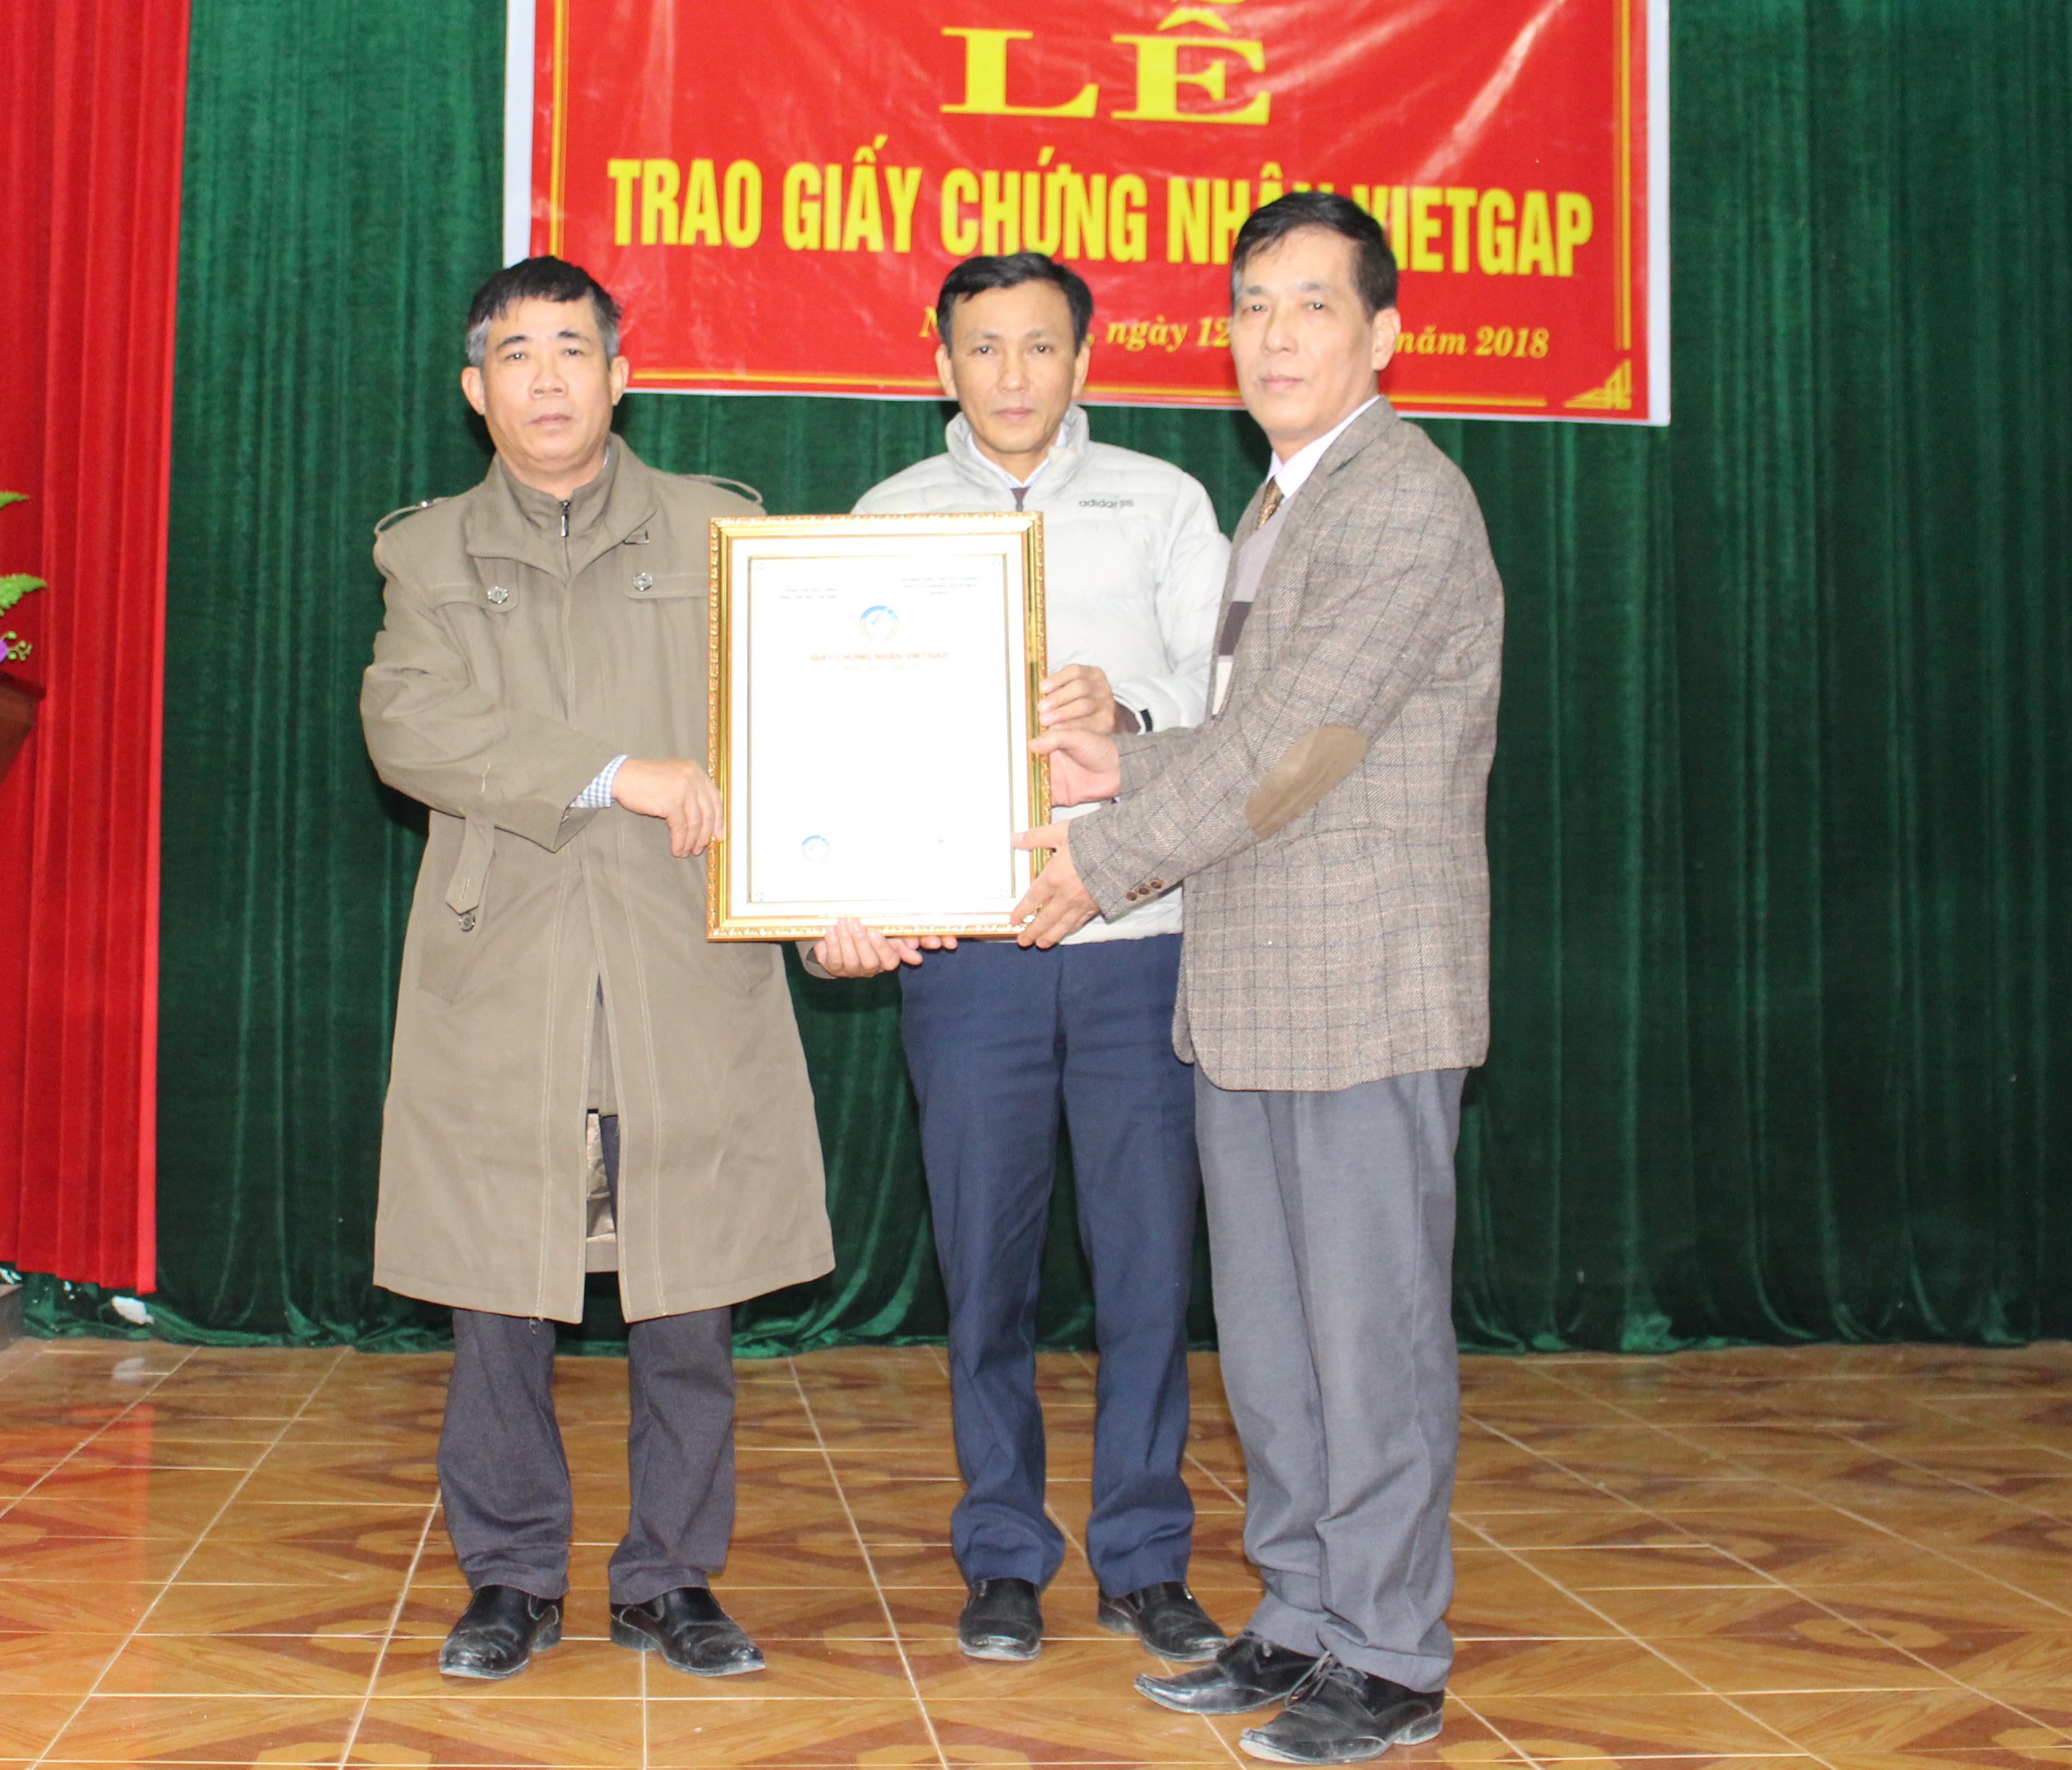 Lãnh đạo Chi cục Quản lý chất lượng Nông lâm sản và Thủy sản Nghệ An trao Giấy chứng nhận VietGAP cho HTX dịch vụ nông nghiệp xã Nghi Lâm. Ảnh: Nhật Tuấn